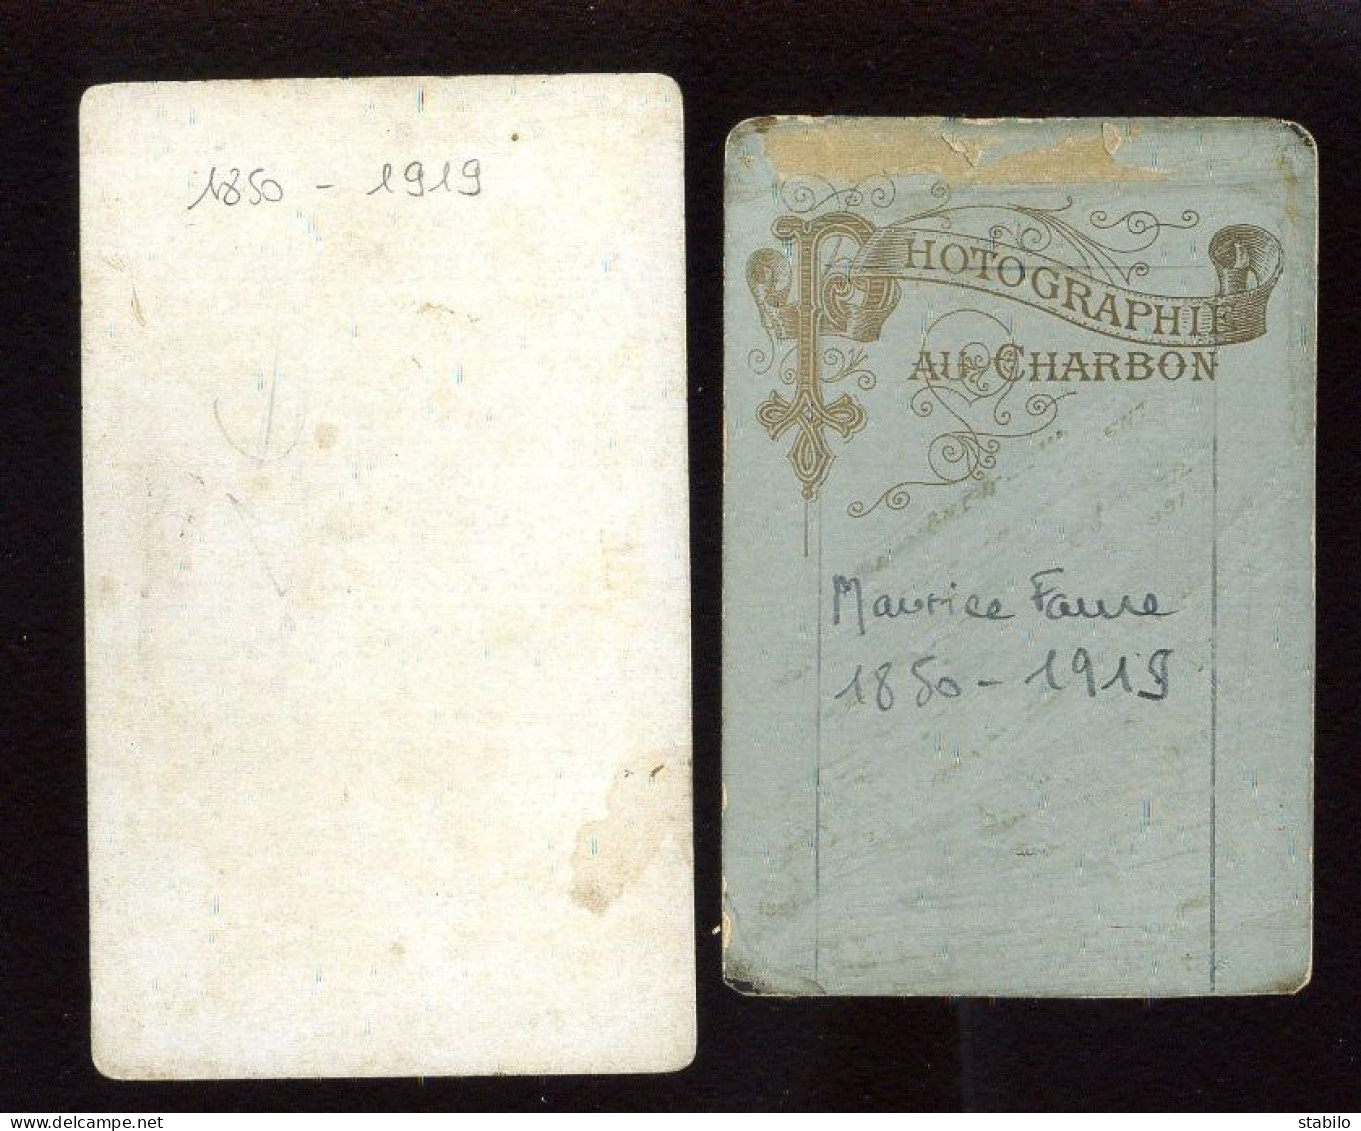 MAURICE-LOUIS FAURE (1850-1919) - HOMME POLITIQUE, MAJORAL DU FELIBRIGE (VOIR DESCRIPTION) - 2 PHOTOS FORMAT CDV - Identified Persons